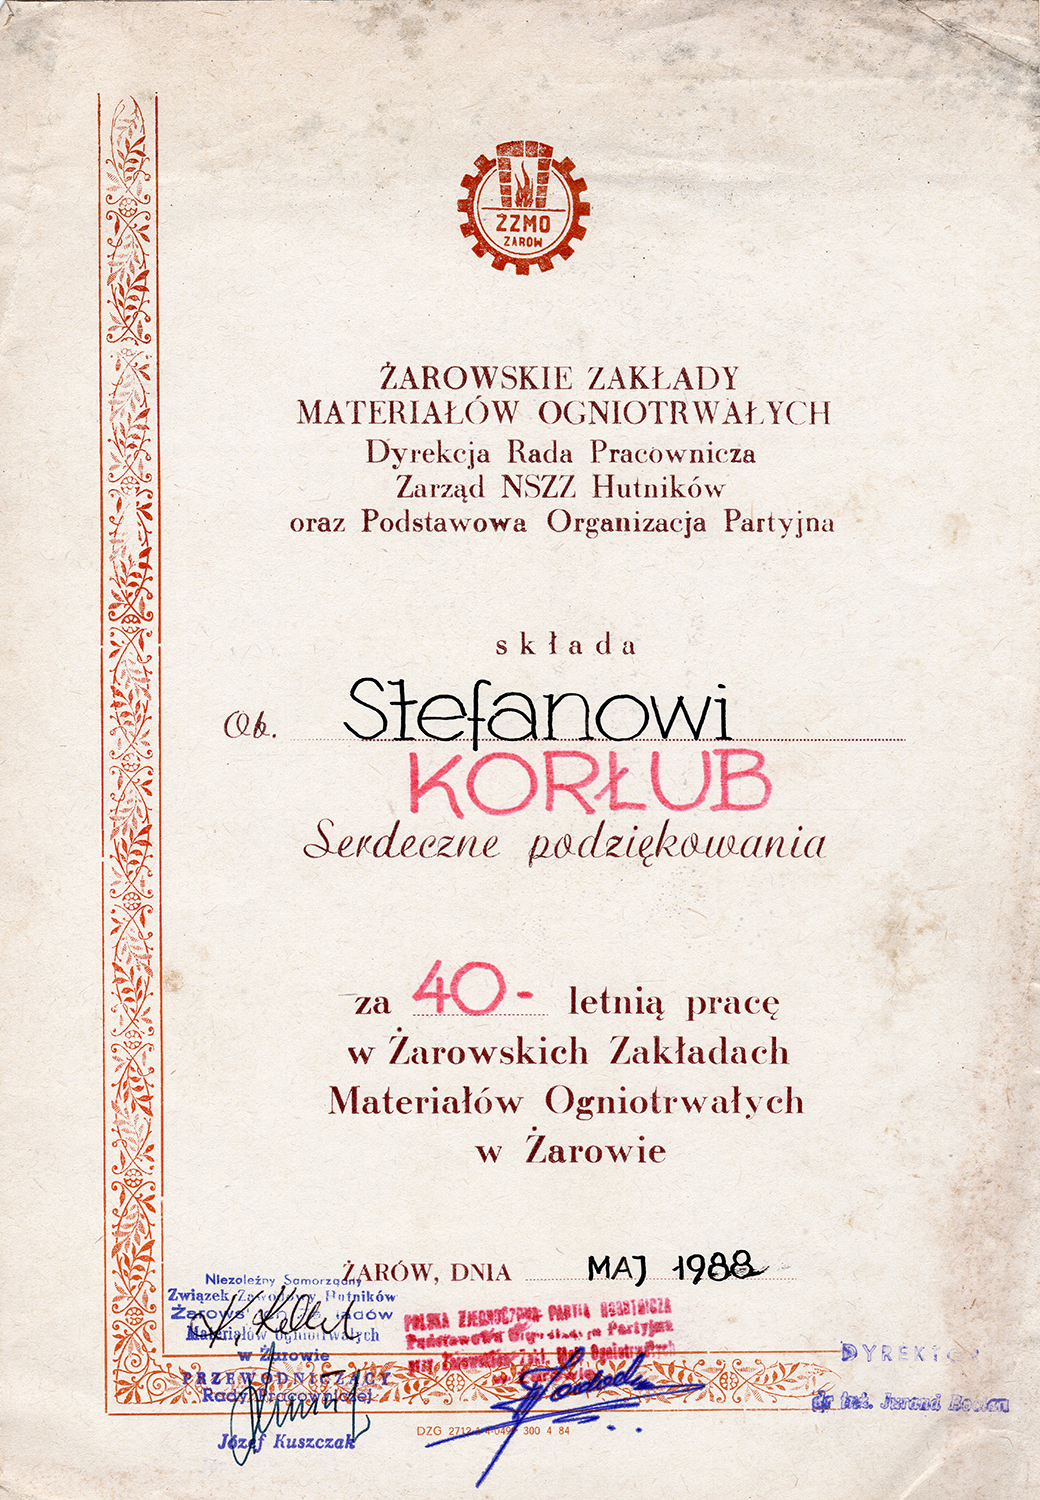 Dyplomy – Korłub 1973-1989 (1)